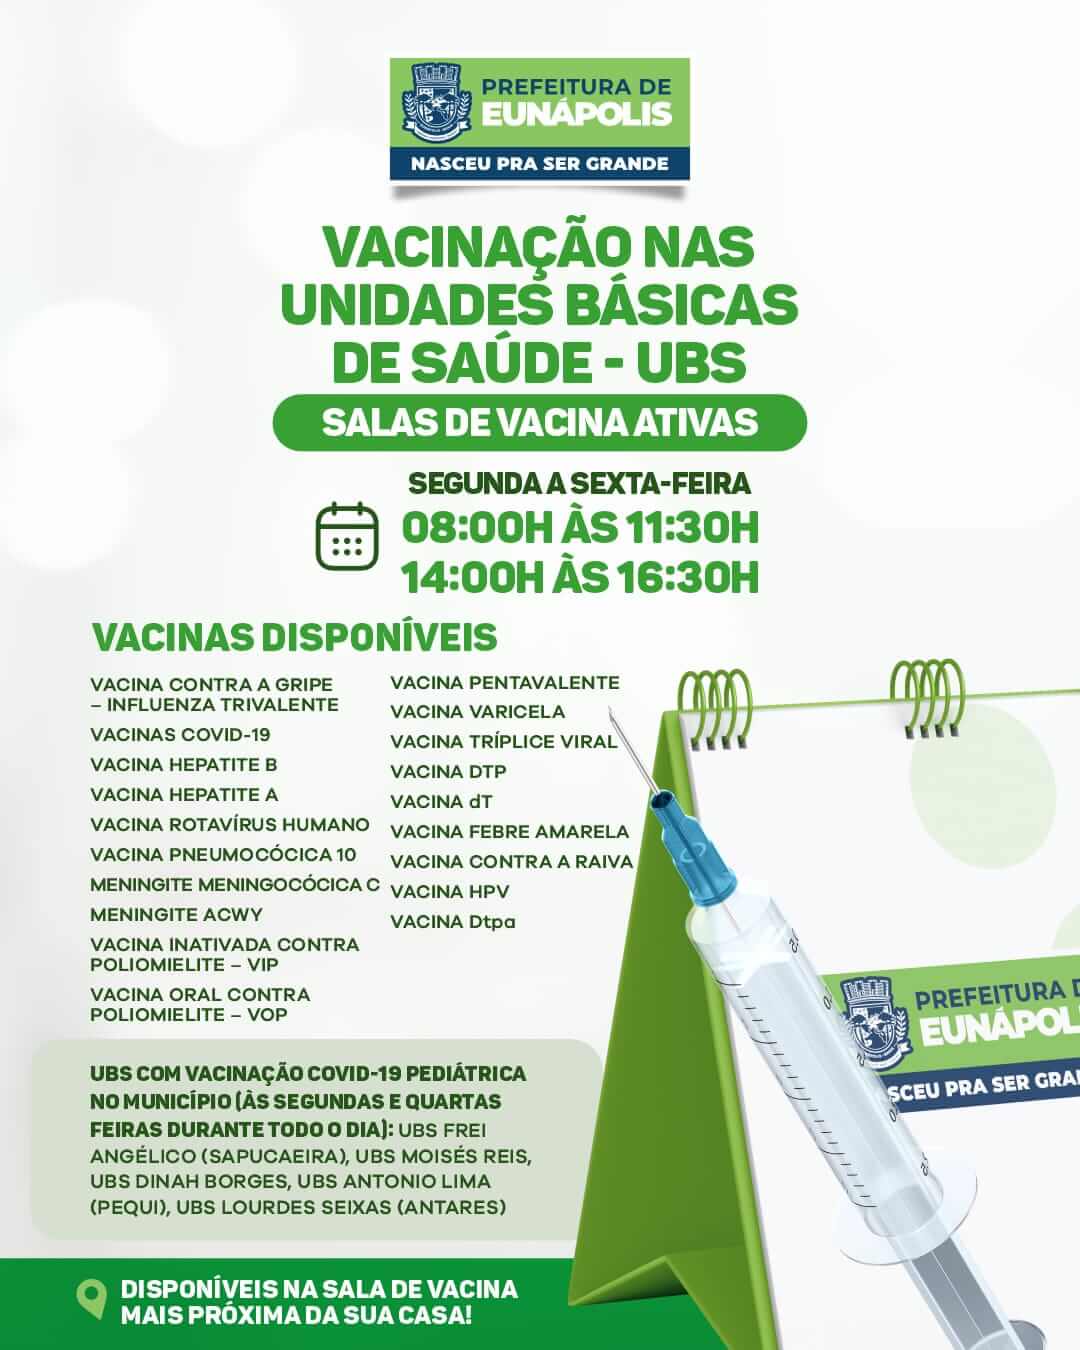 Prefeitura solicita que eunapolitanos atualizem a caderneta de vacinação 7